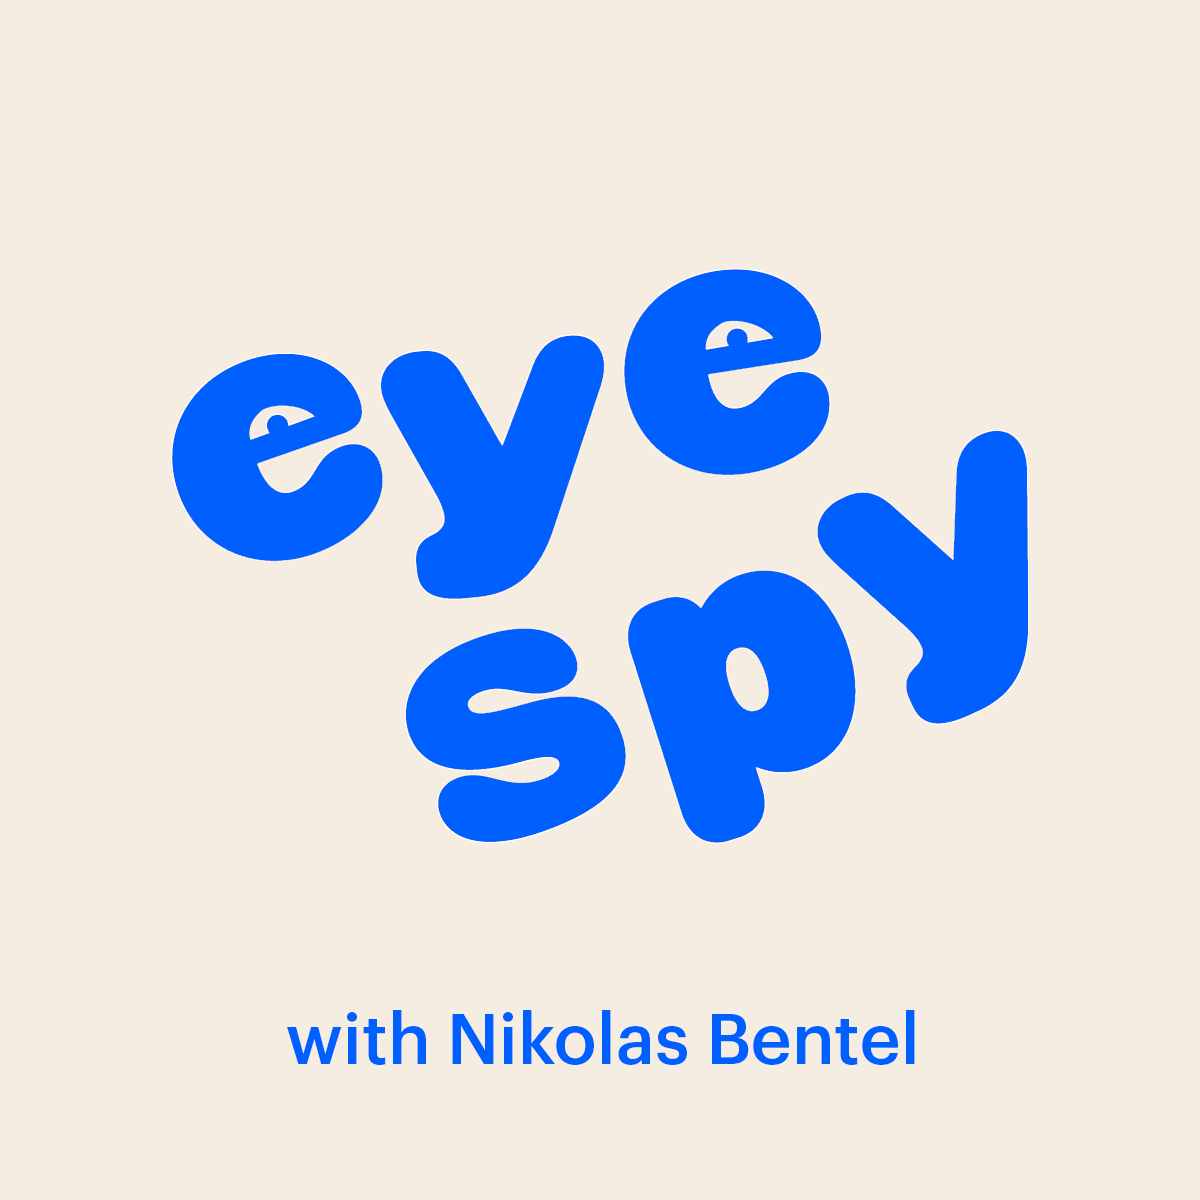 Eye Spy with Nik Bentel